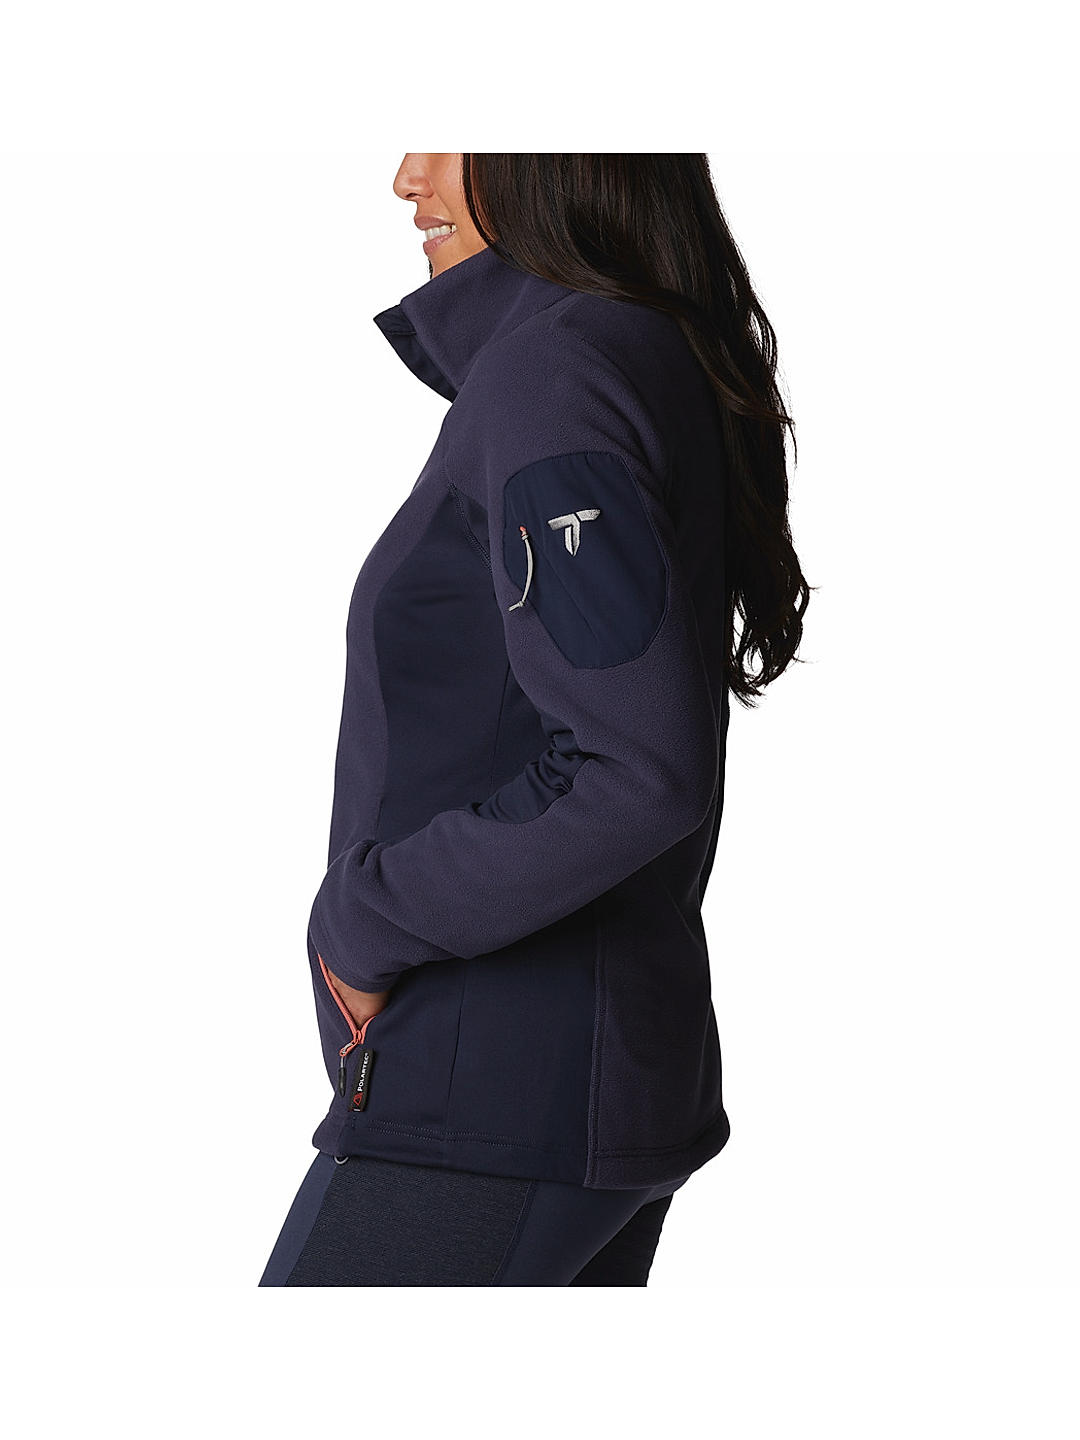 Buy Blue Titan Pass 2.0 Ii Fleece for Women Online at Columbia Sportswear